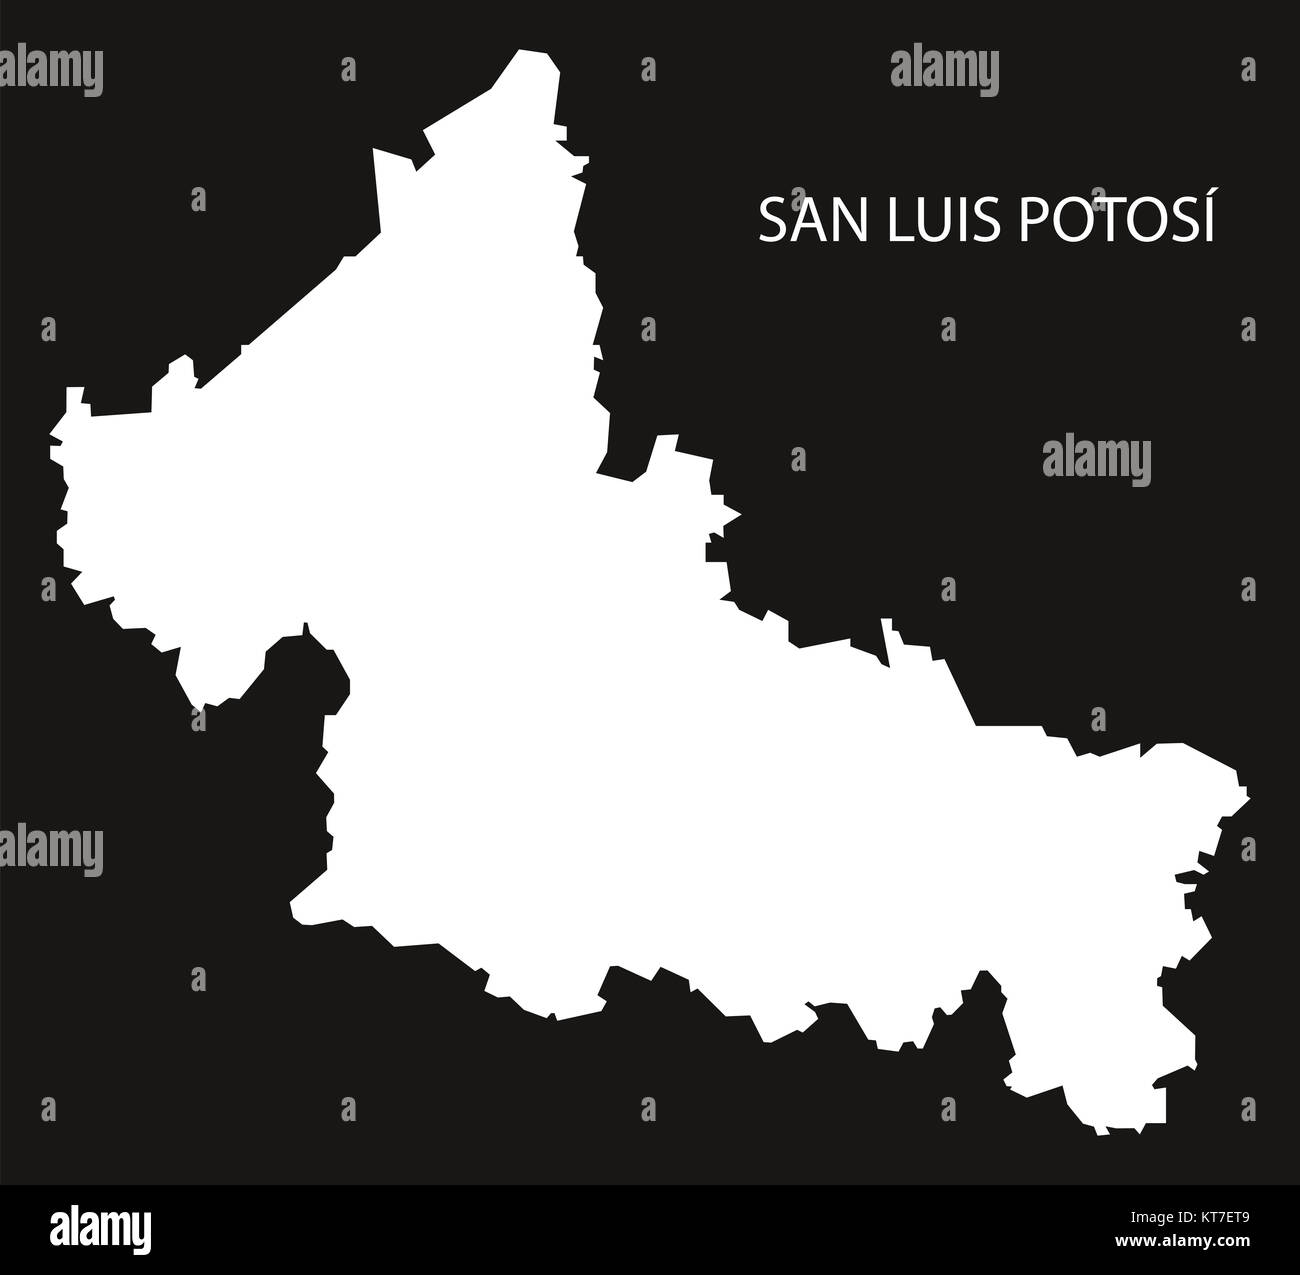 San Luis Potosi Mexico Map black inverted silhouette Stock Photo